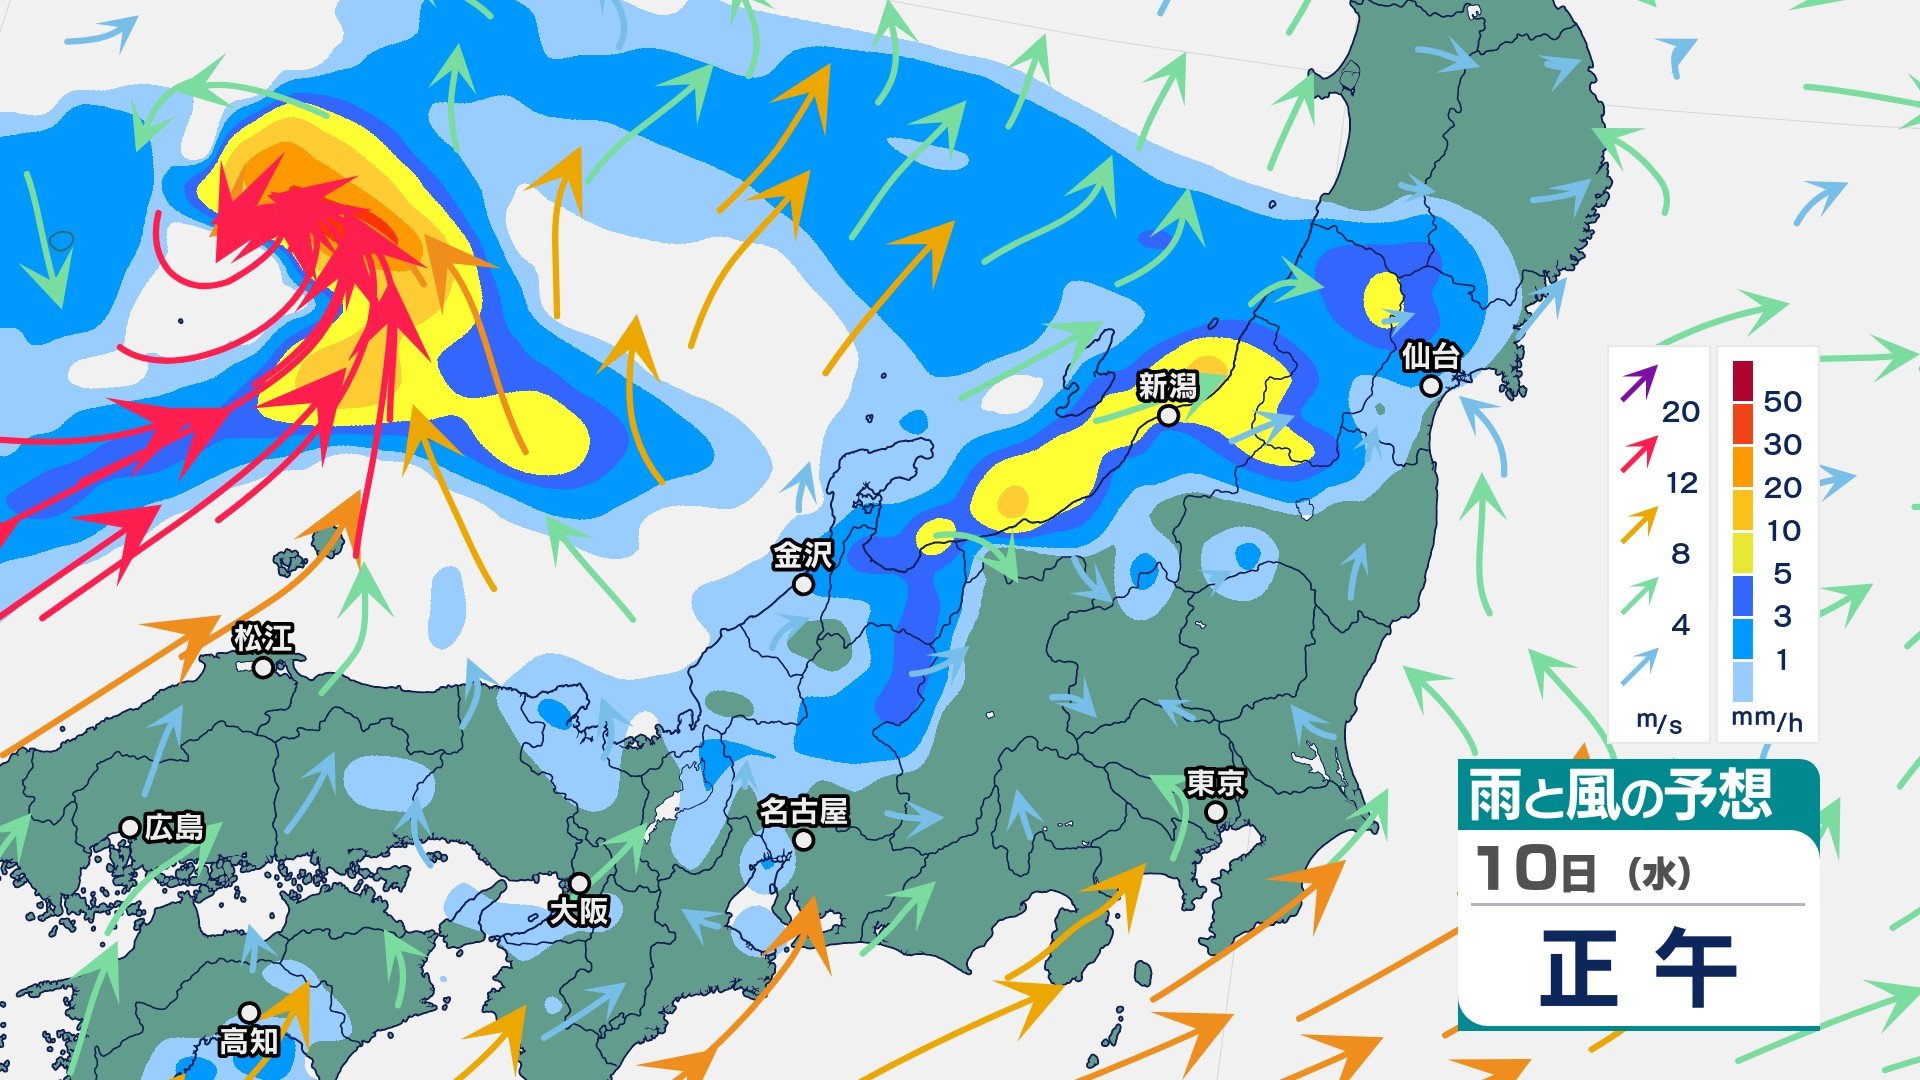 北陸地方では11日夕方にかけて大気の状態が非常に不安定　梅雨前線が南下し“警報級大雨”の恐れ　新潟県では12日朝までに200ミリの降水量予想【今後の雨と風のシミュレーション】